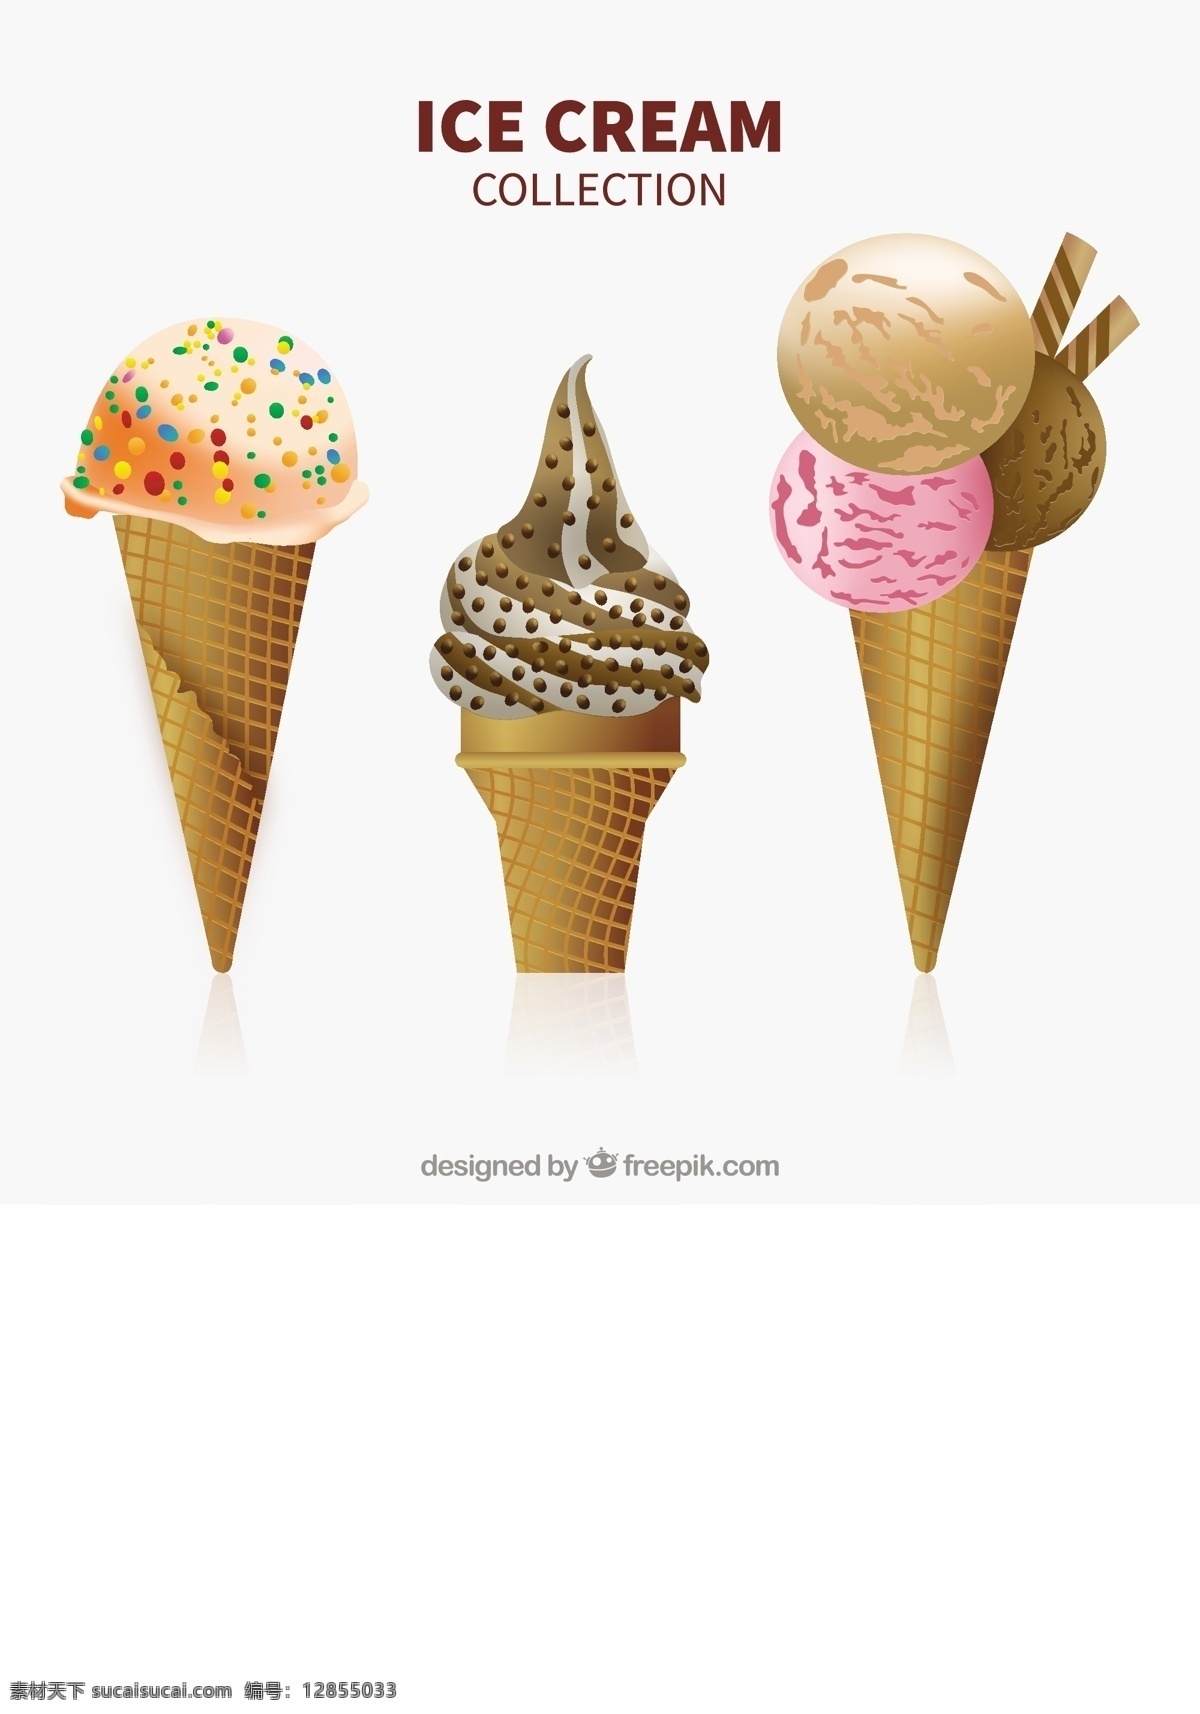 三个 美味 冰淇淋 插图 矢量 三个美味的 冰淇淋插图 矢量素材 甜品图标 冷饮插图 清凉甜品 冰淇淋标志 卡通图标 雪糕图标 网页图标 冰激凌图标 冰激凌插图